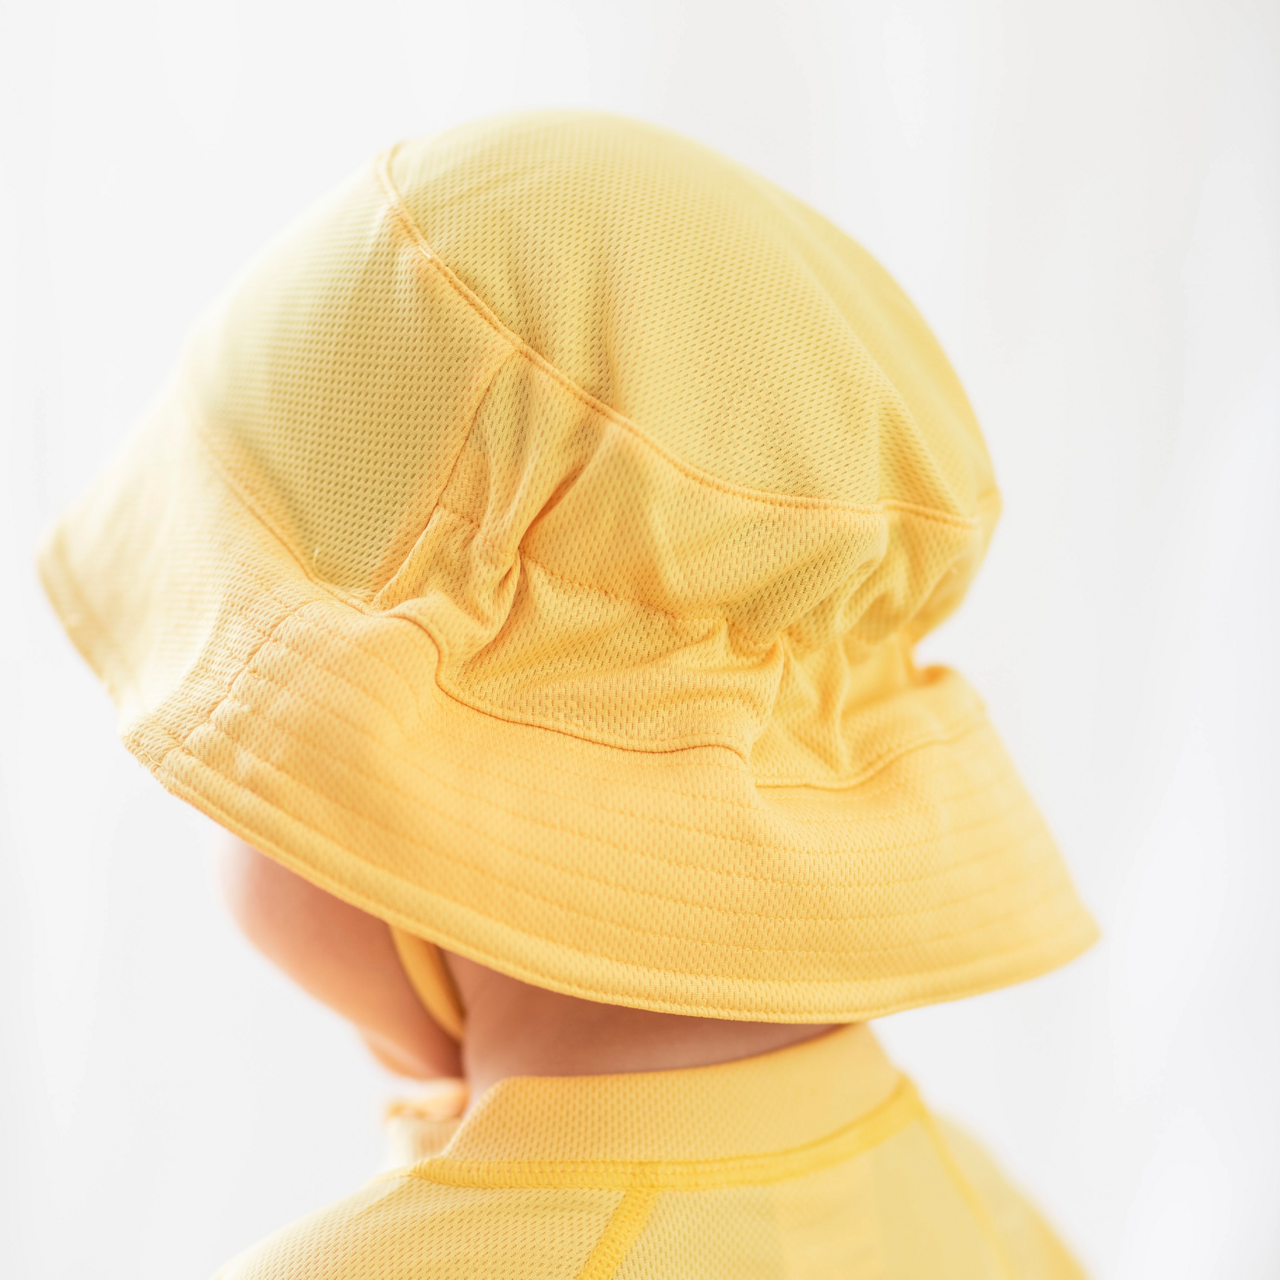 UV Sunny hat Yellow  0-4M